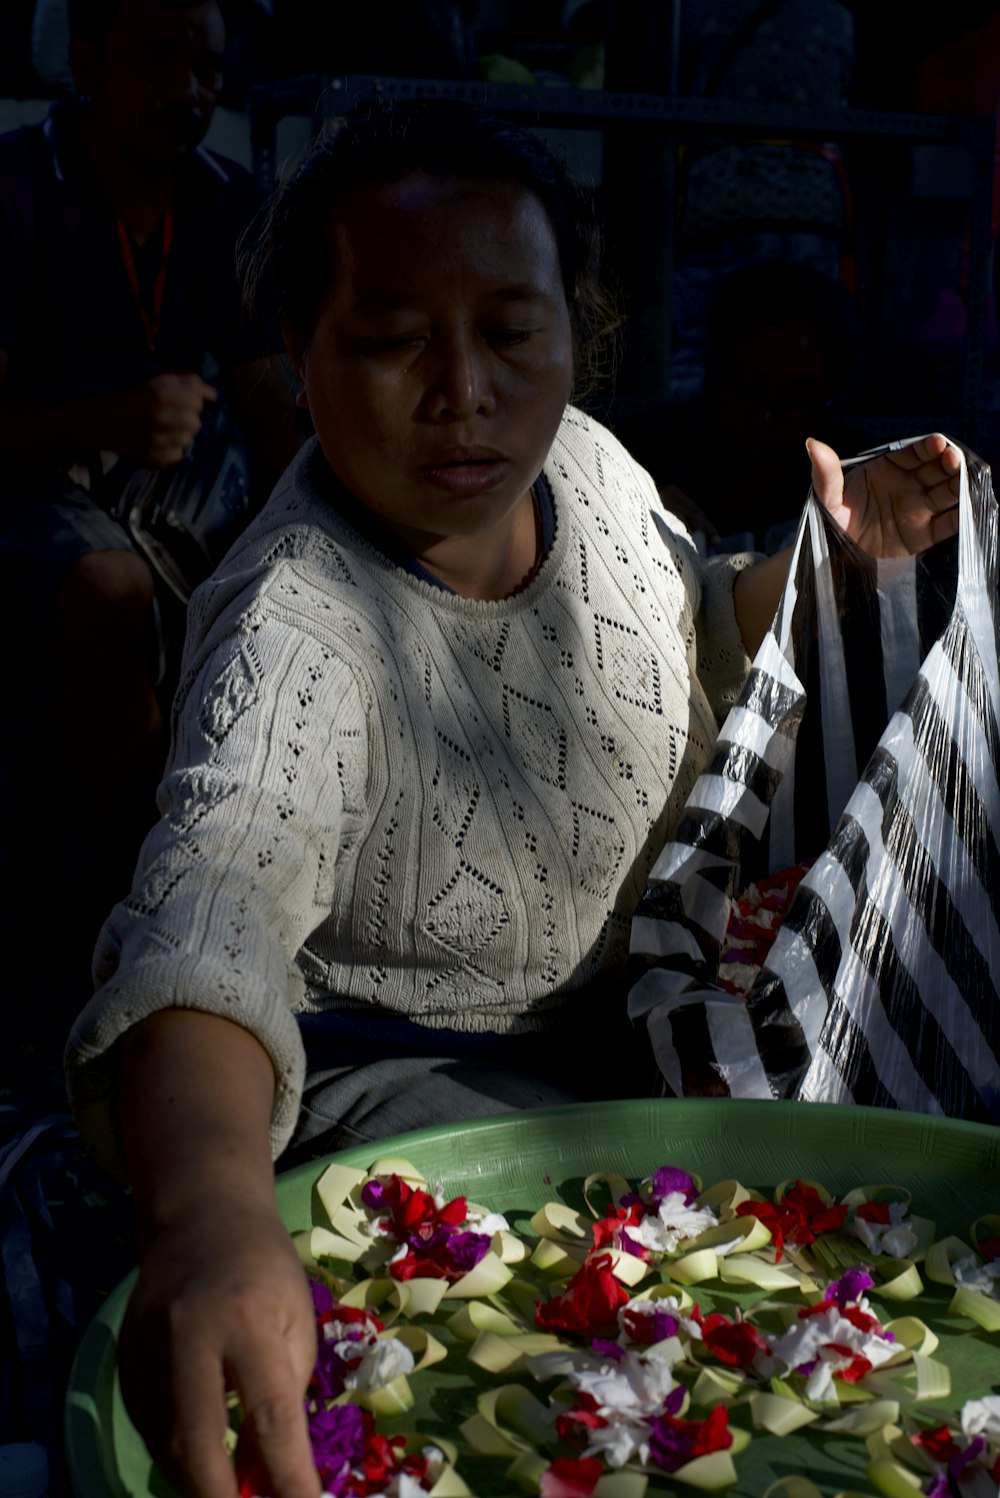 Une femme assise à une table avec une assiette de nourriture